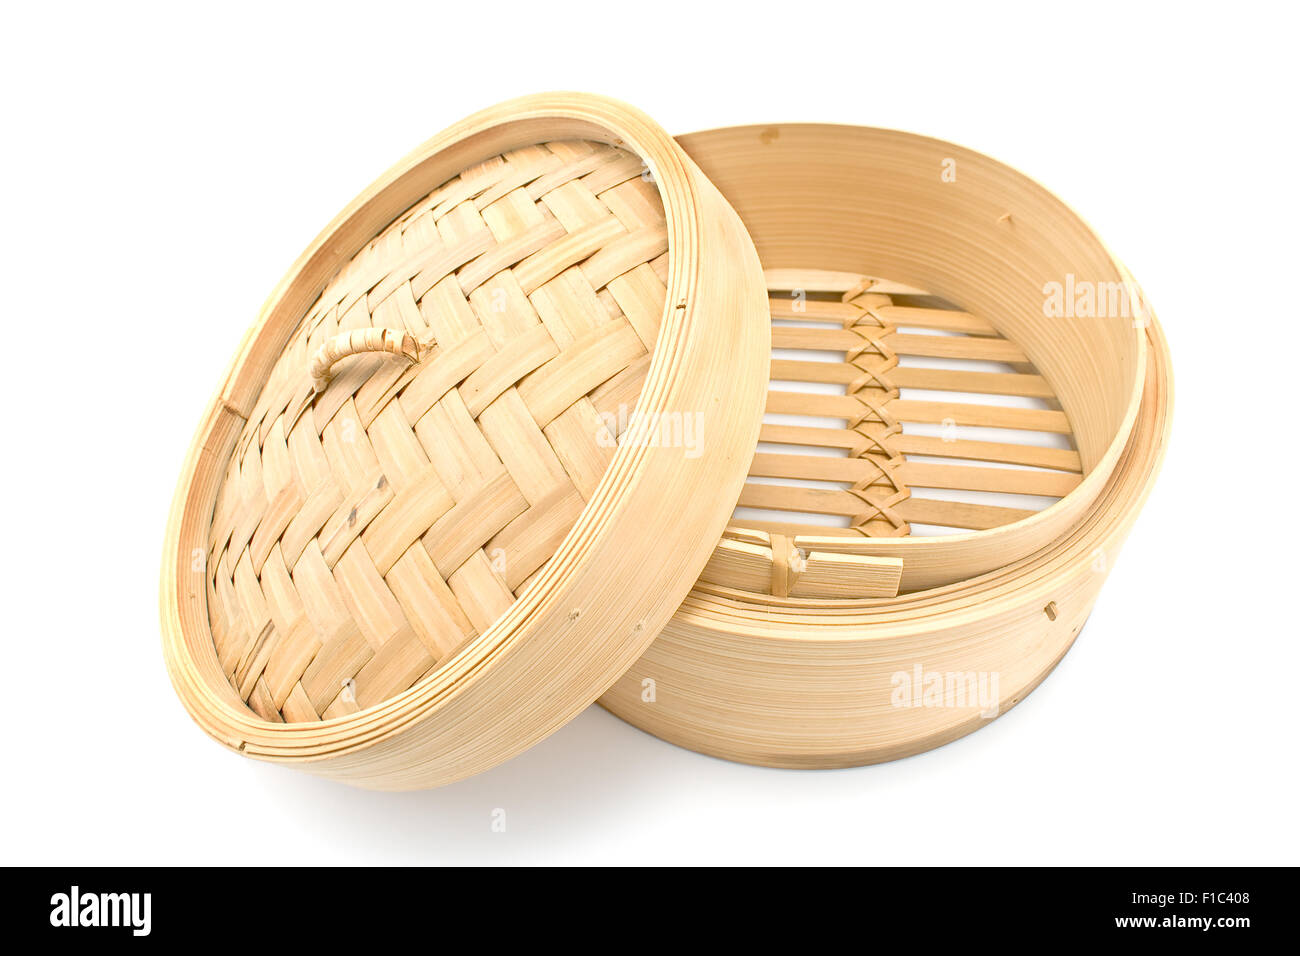 Cestello di bambù vaporizzatore con coperchio aperto isolato su bianco Foto Stock